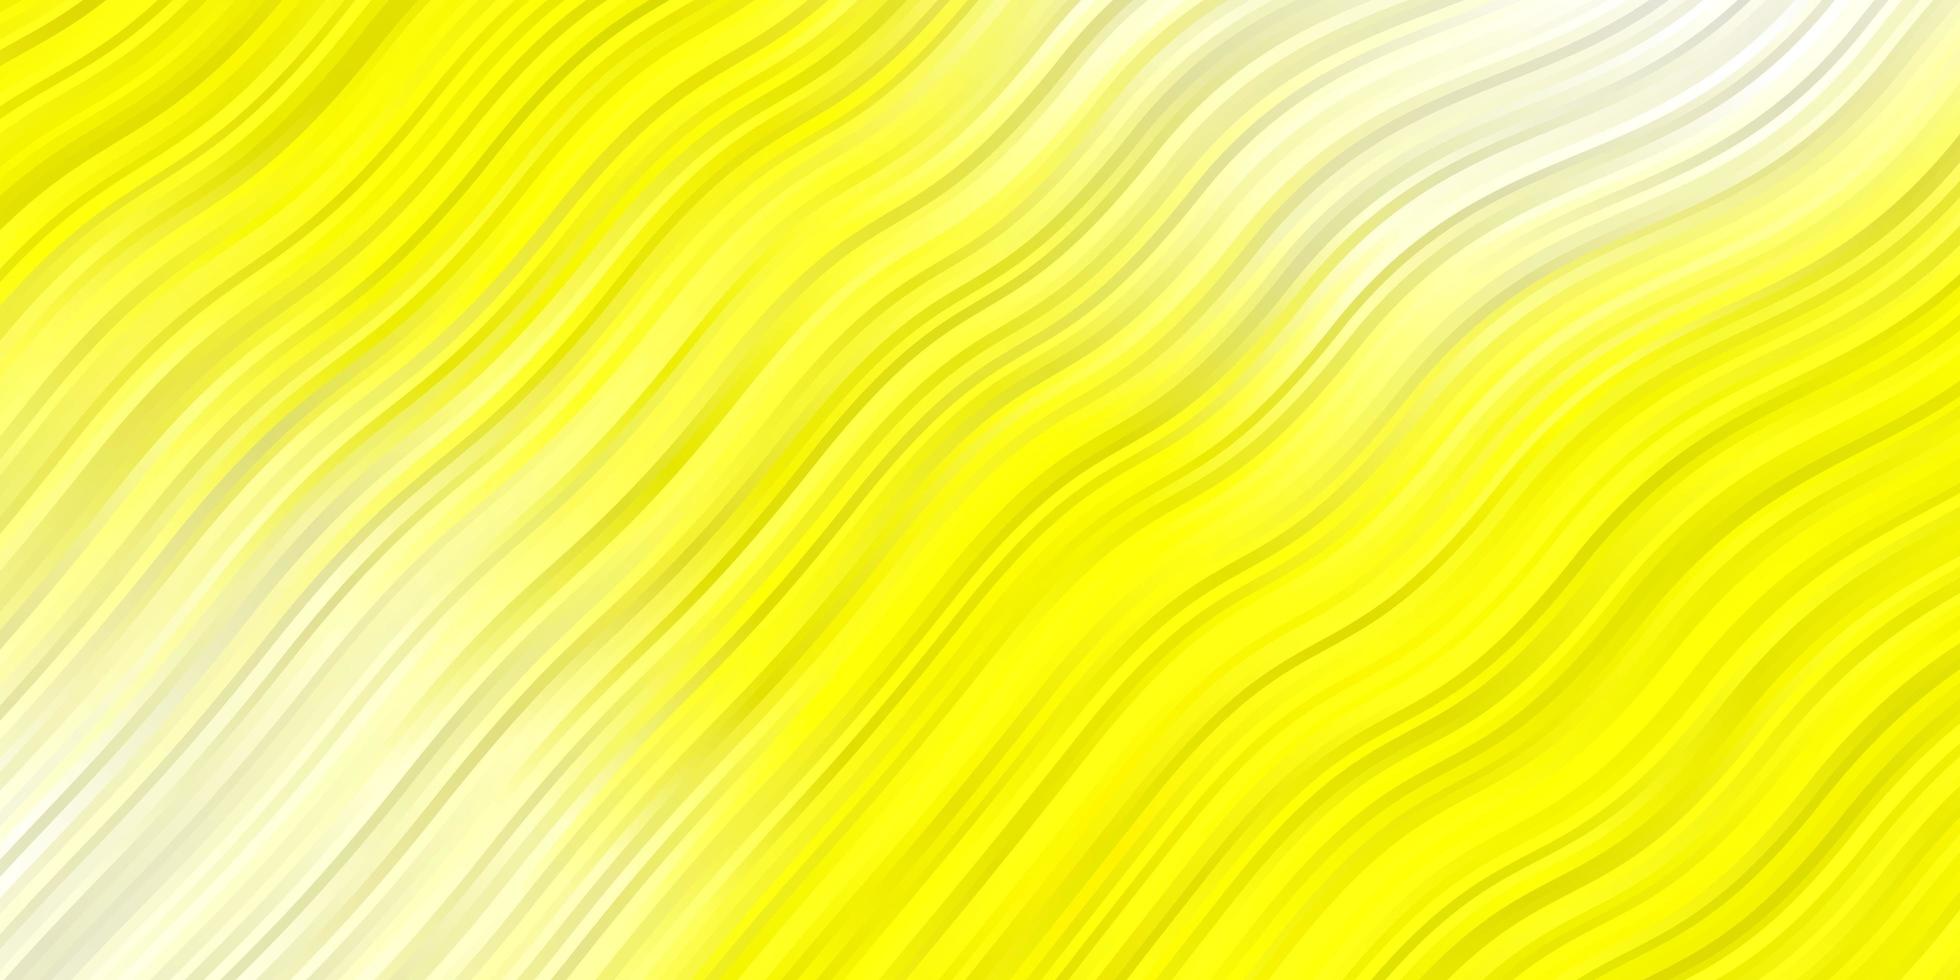 Fondo de vector amarillo claro con arcos nueva ilustración colorida con patrón de líneas dobladas para anuncios comerciales